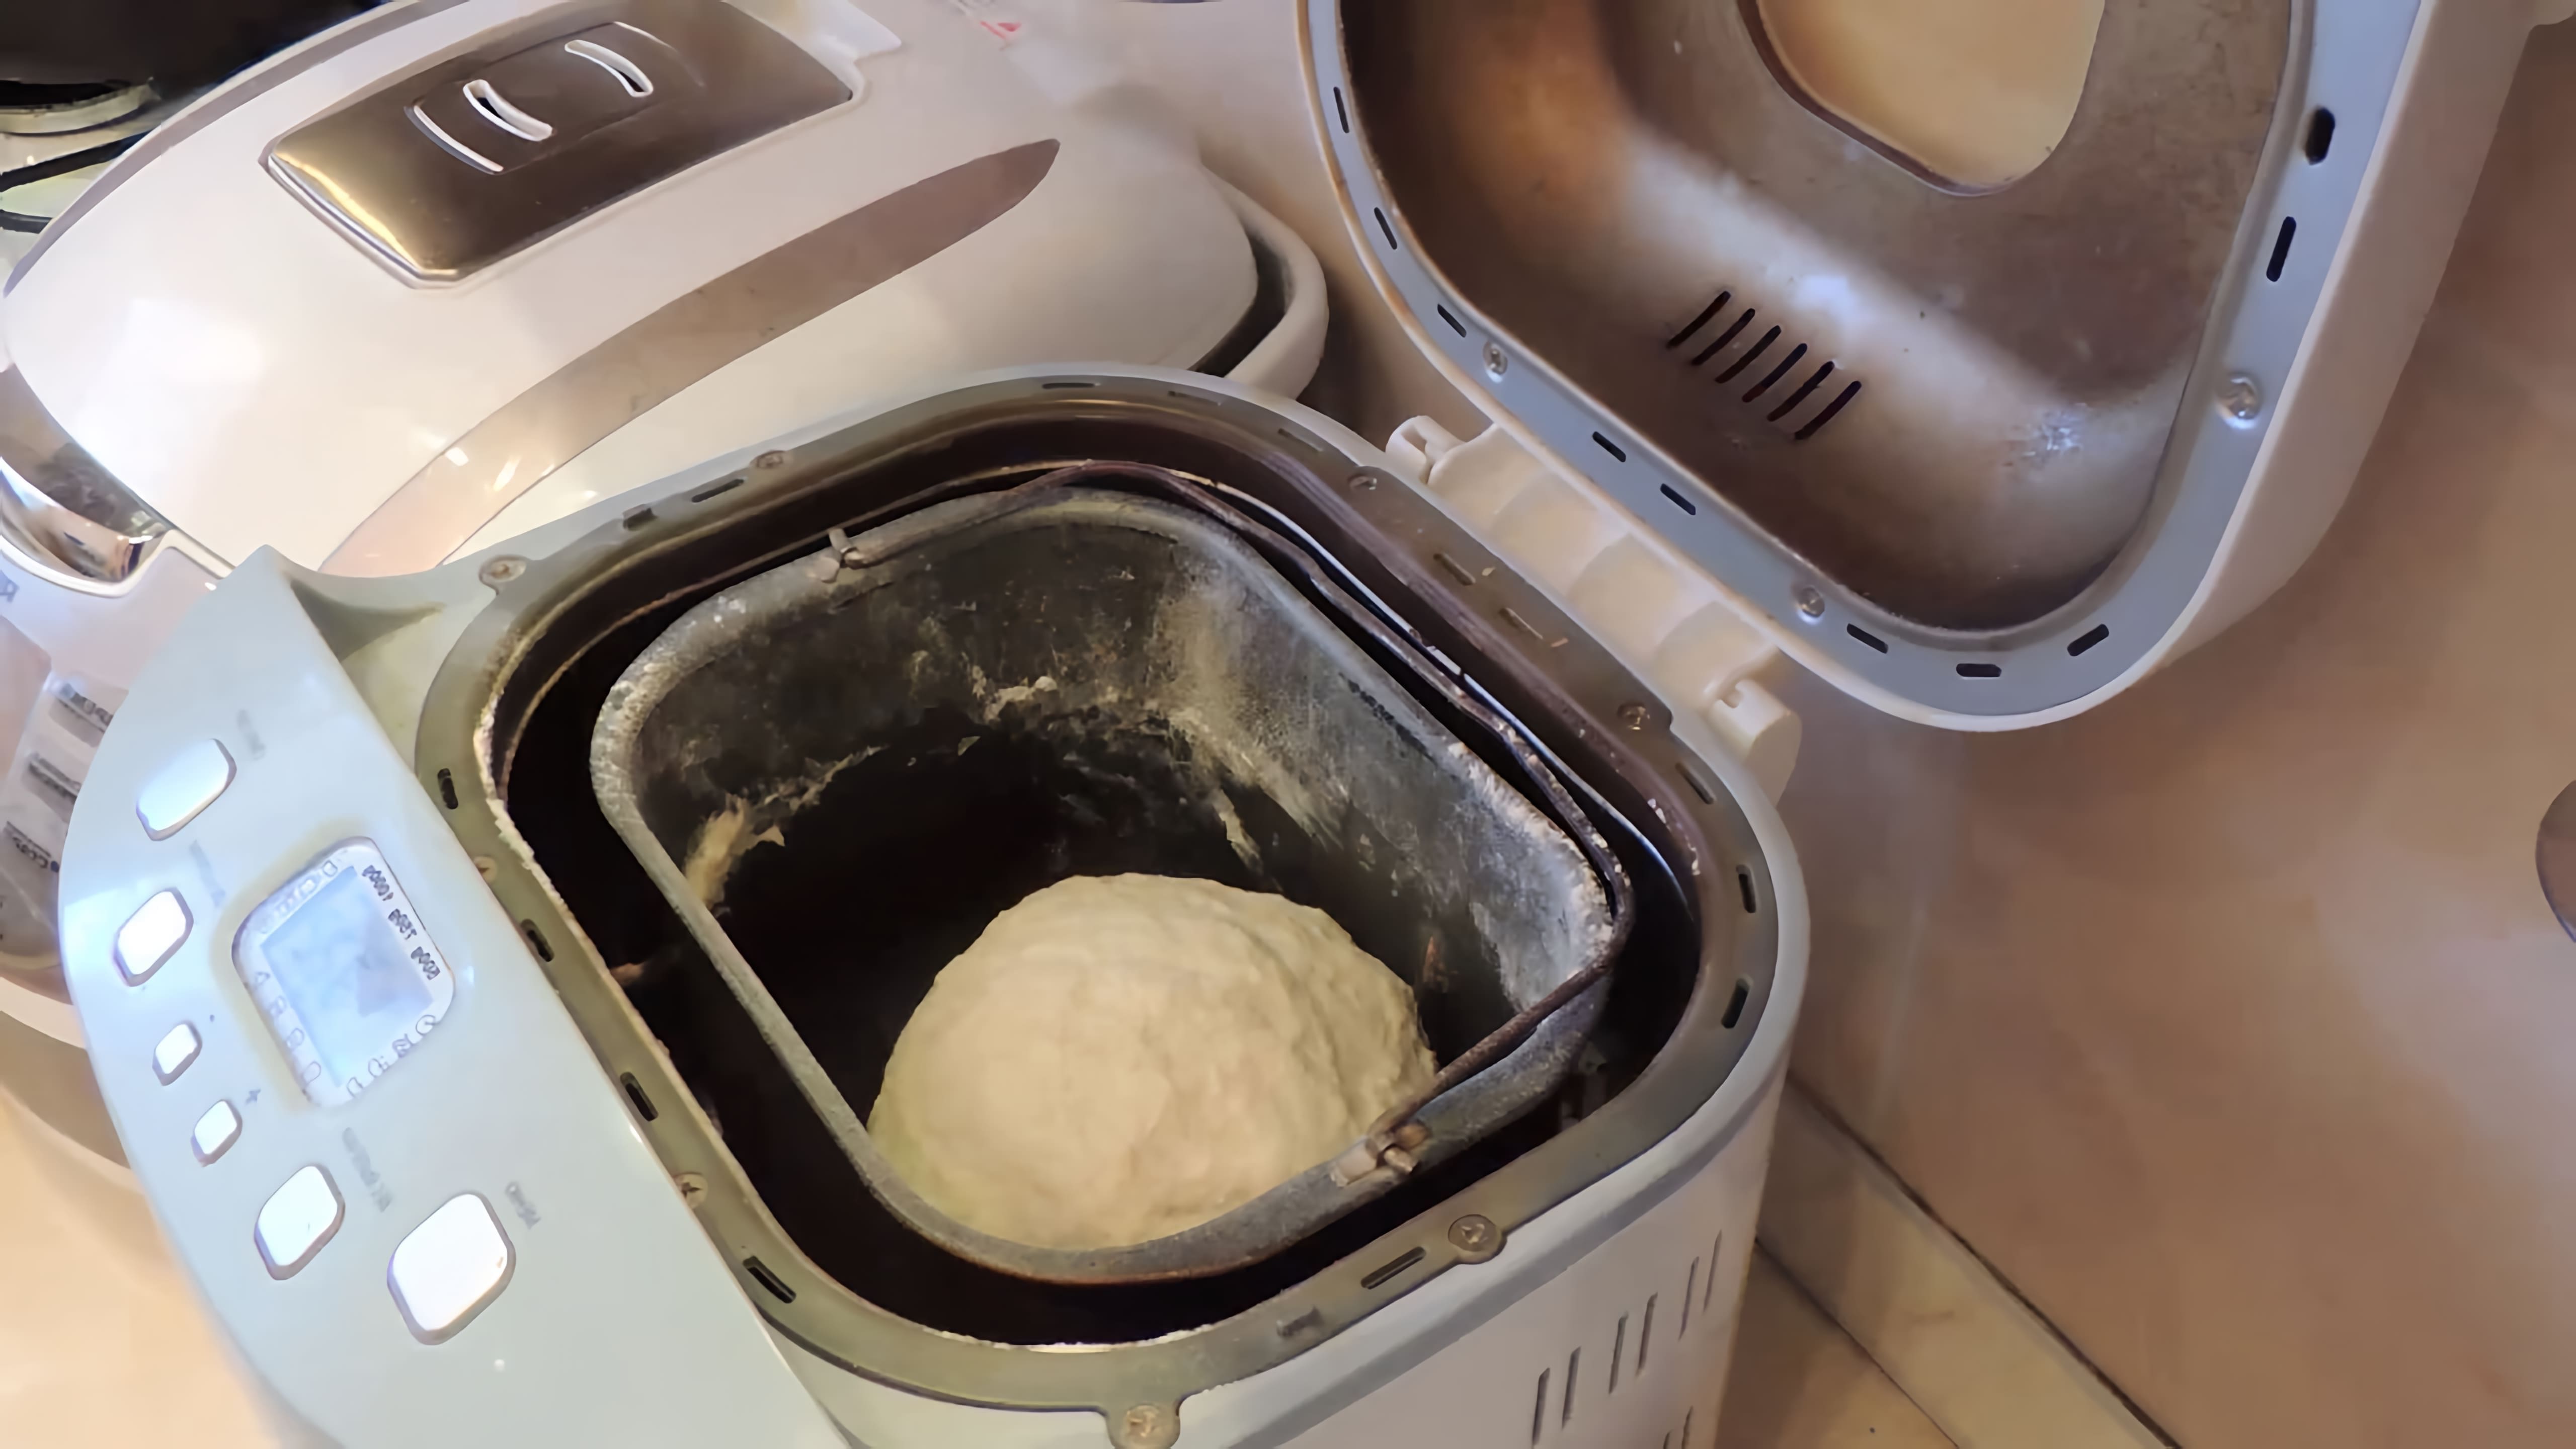 Видео рецепт приготовления простого белого хлеба дома, используя всего лишь несколько ингредиентов - подсолнечное масло, соль, сахар, муку и дрожжи